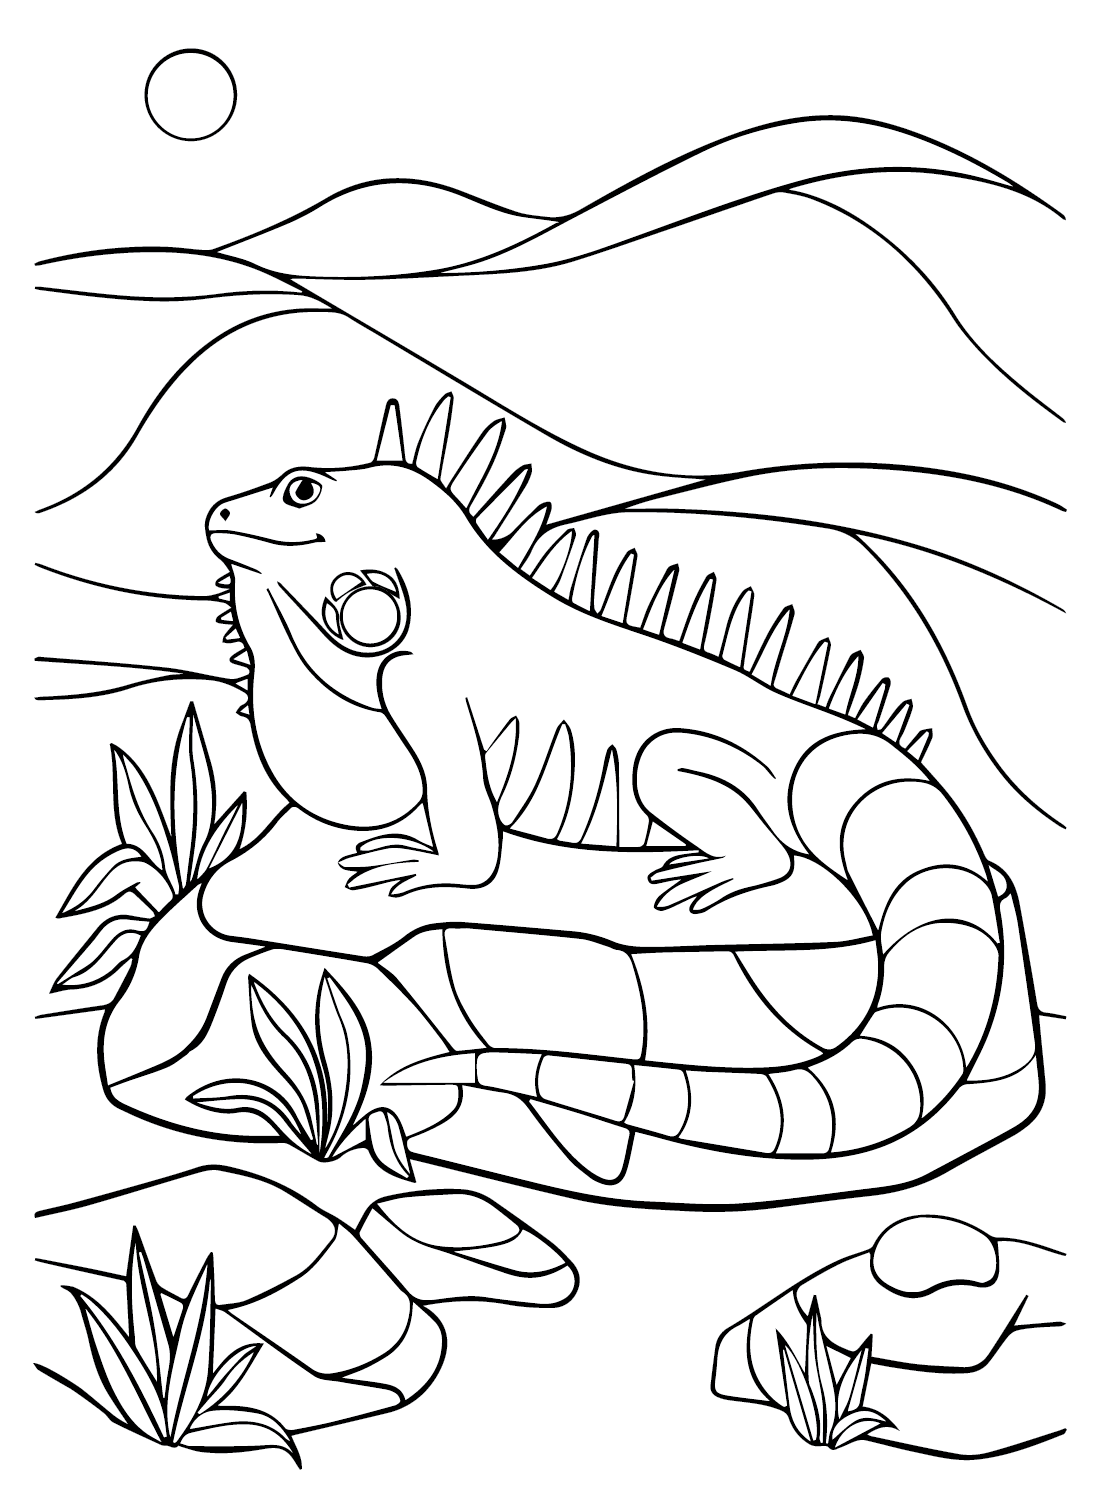 Página para colorear de iguana de dibujos animados de Iguana